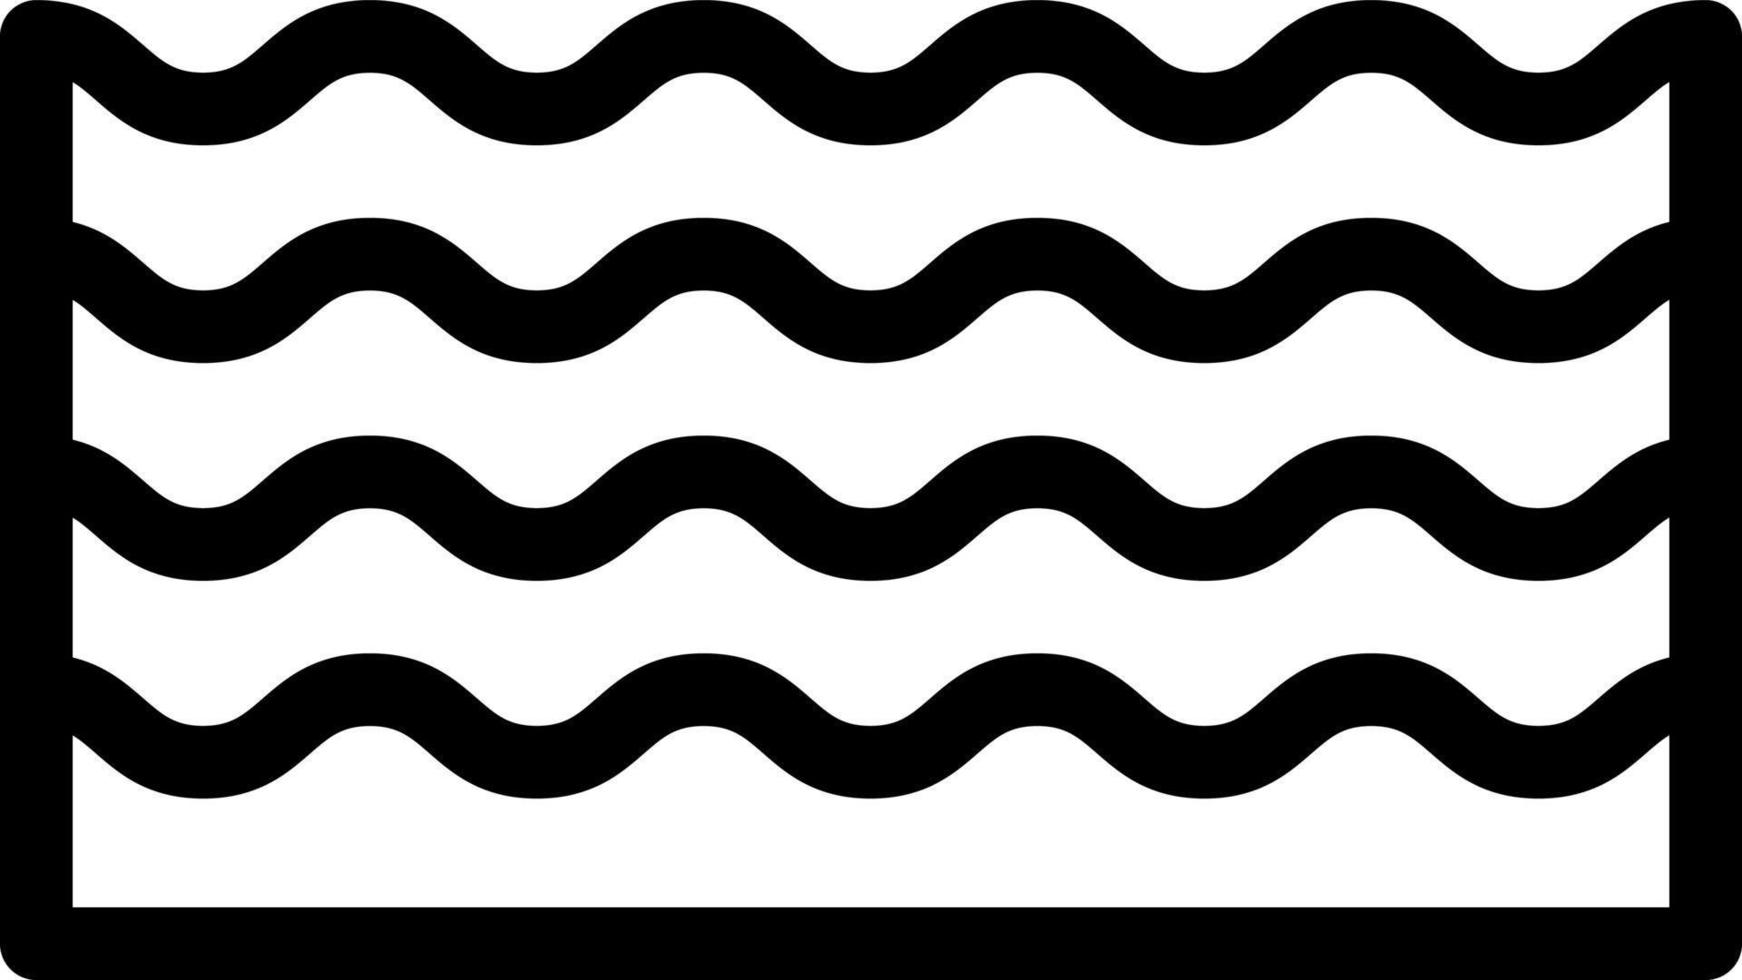 ilustração vetorial de ondas de água em um icons.vector de qualidade background.premium para conceito e design gráfico. vetor